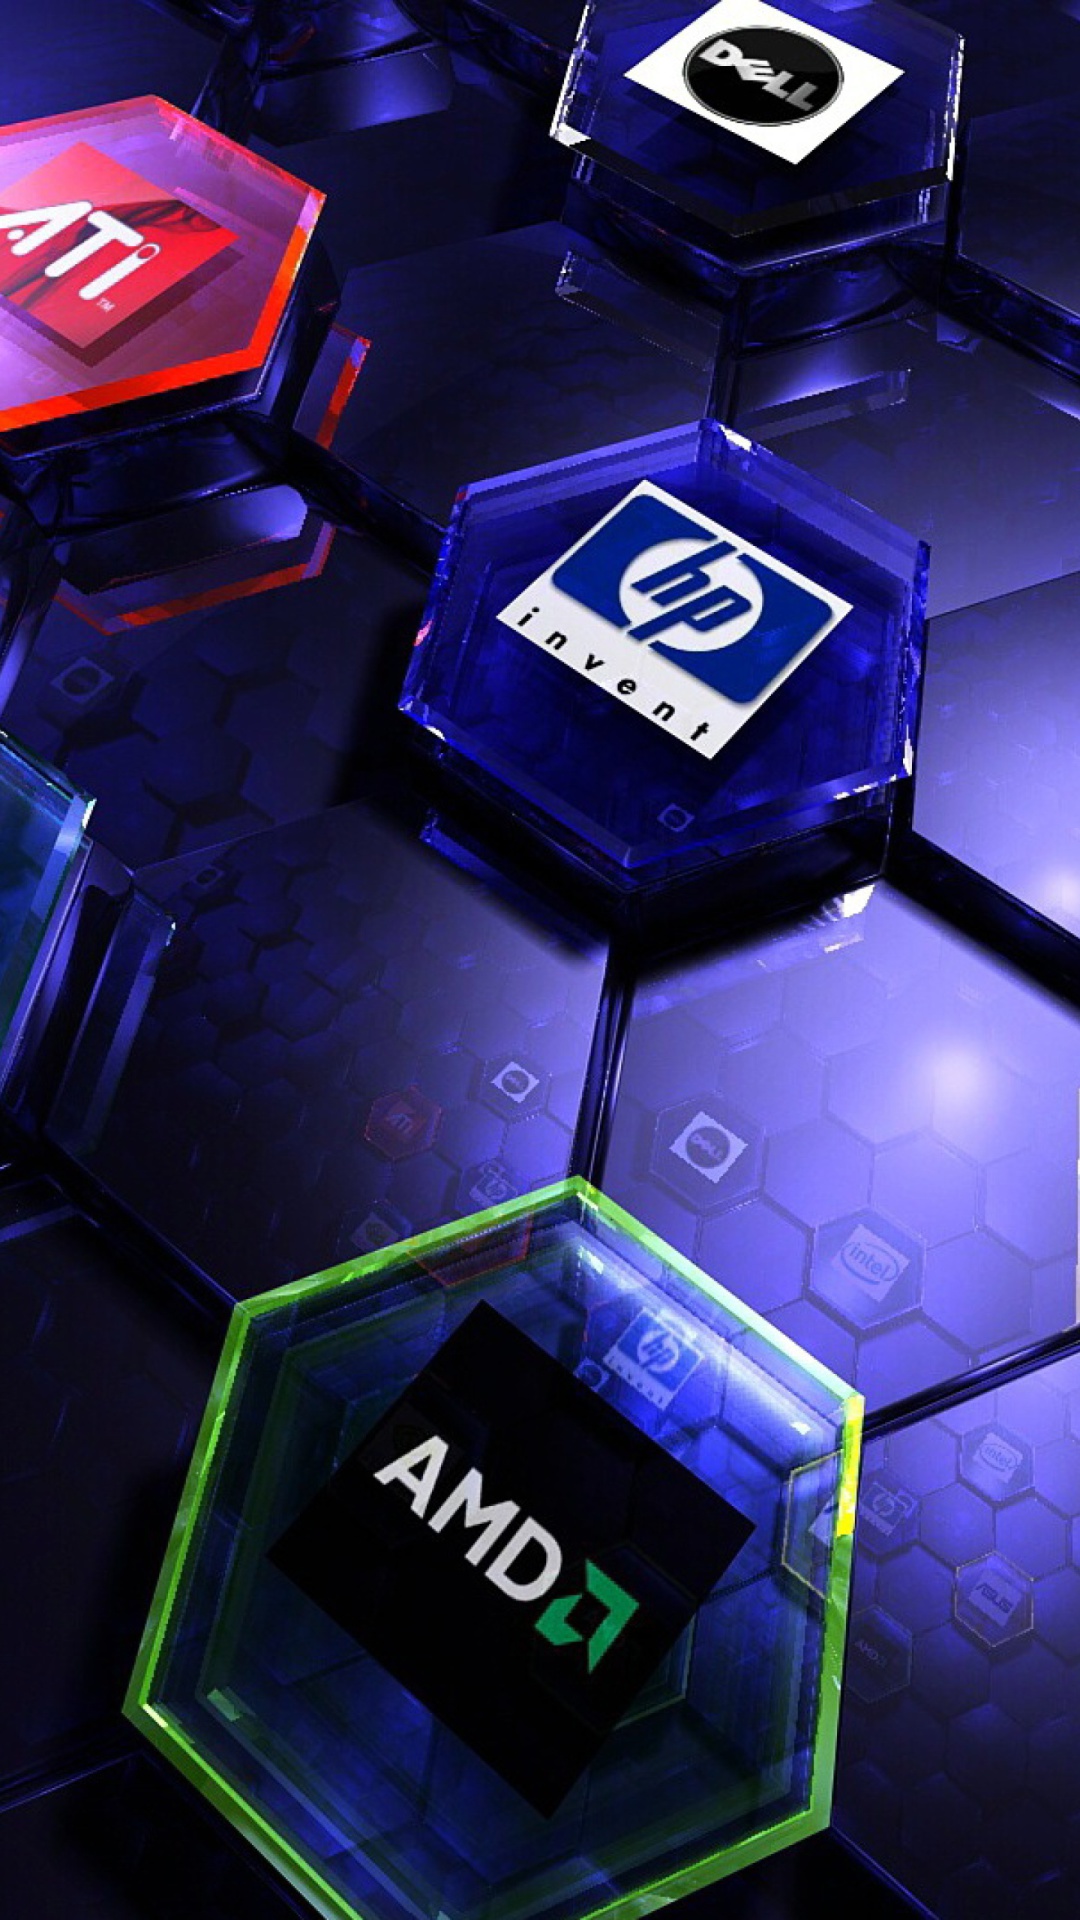 Hi-Tech Logos: AMD, HP, Ati, Nvidia, Asus screenshot #1 1080x1920